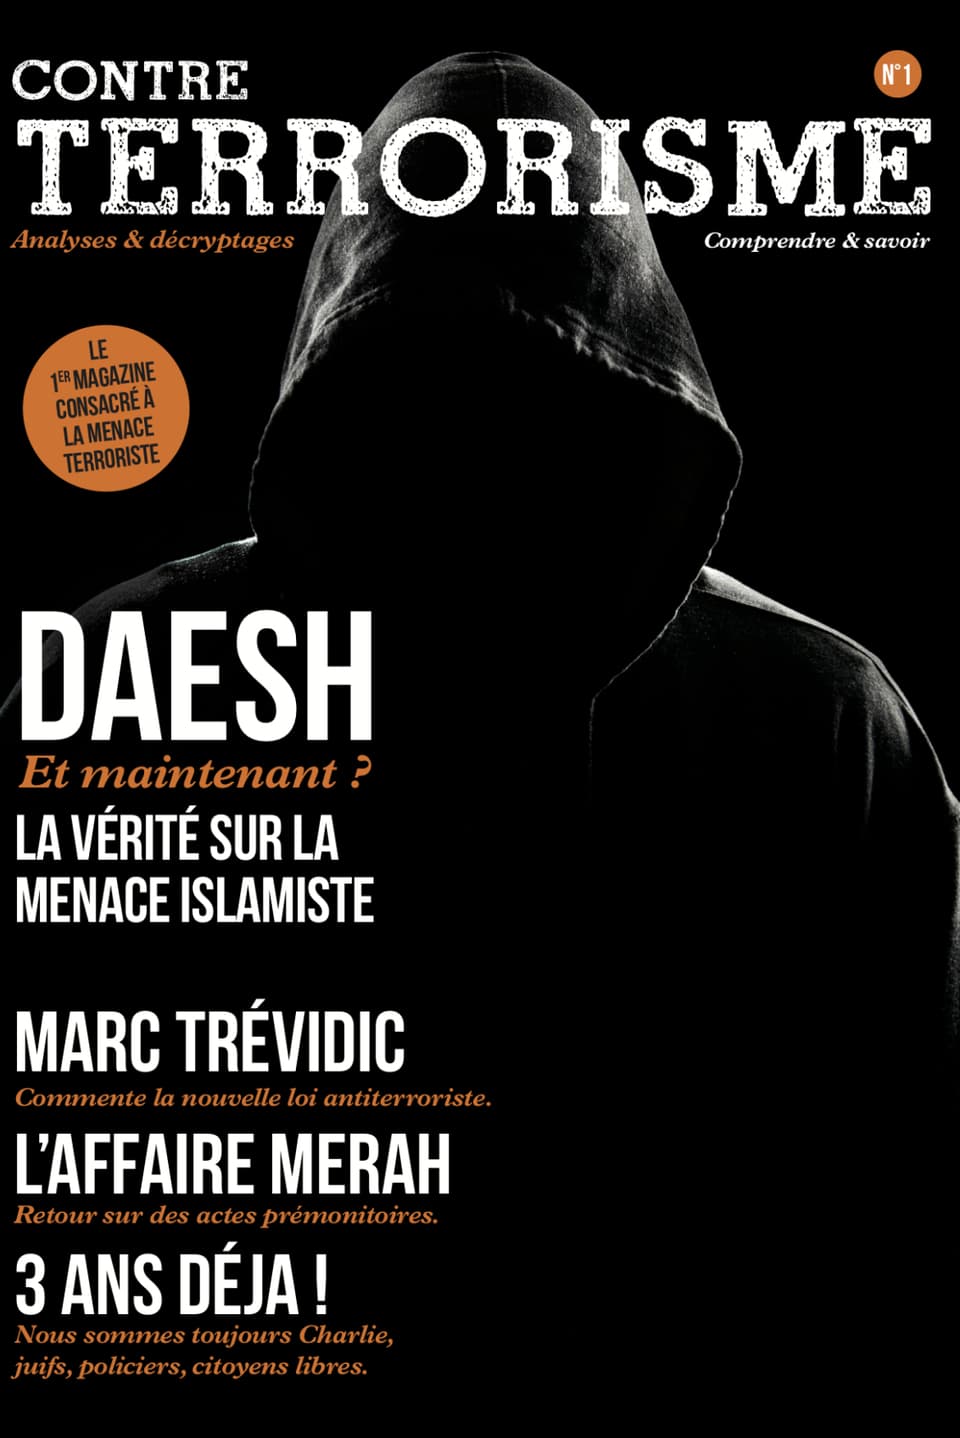 Das Cover von Contre Terrorisme.